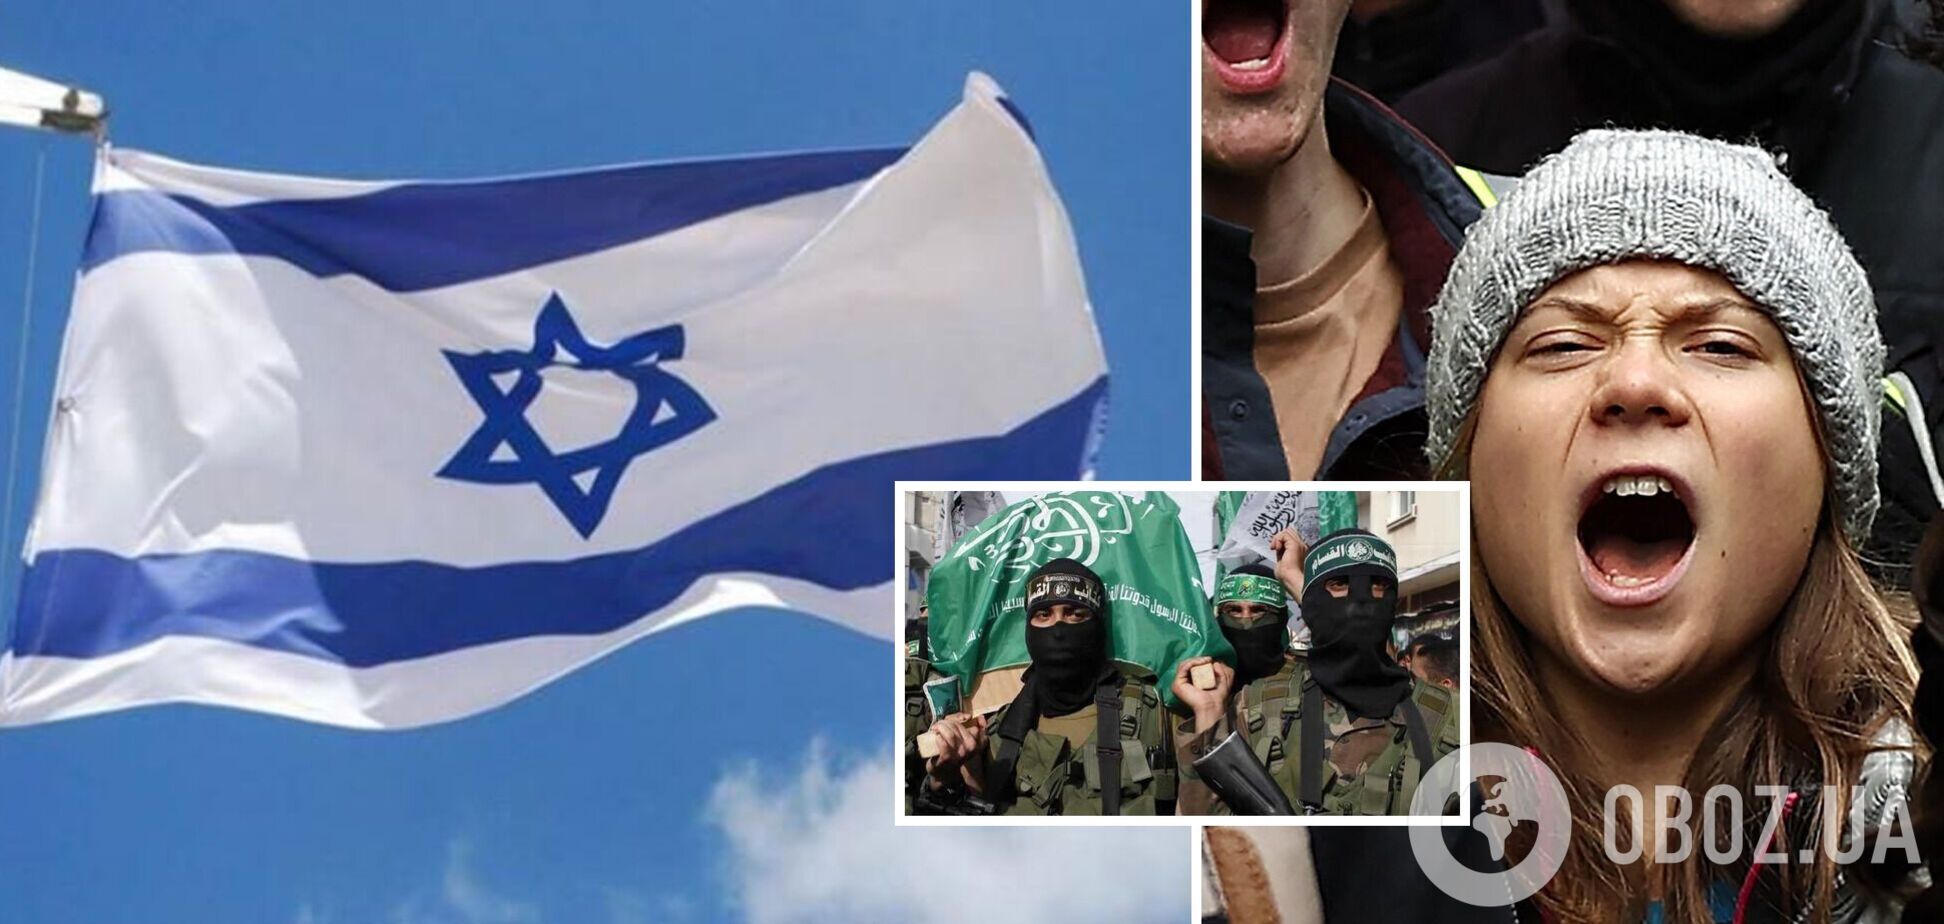 'Приверженцы Греты являются сторонниками терроризма': в Израиле жестко отреагировали на поддержку экоактивисткой Палестины и Газы